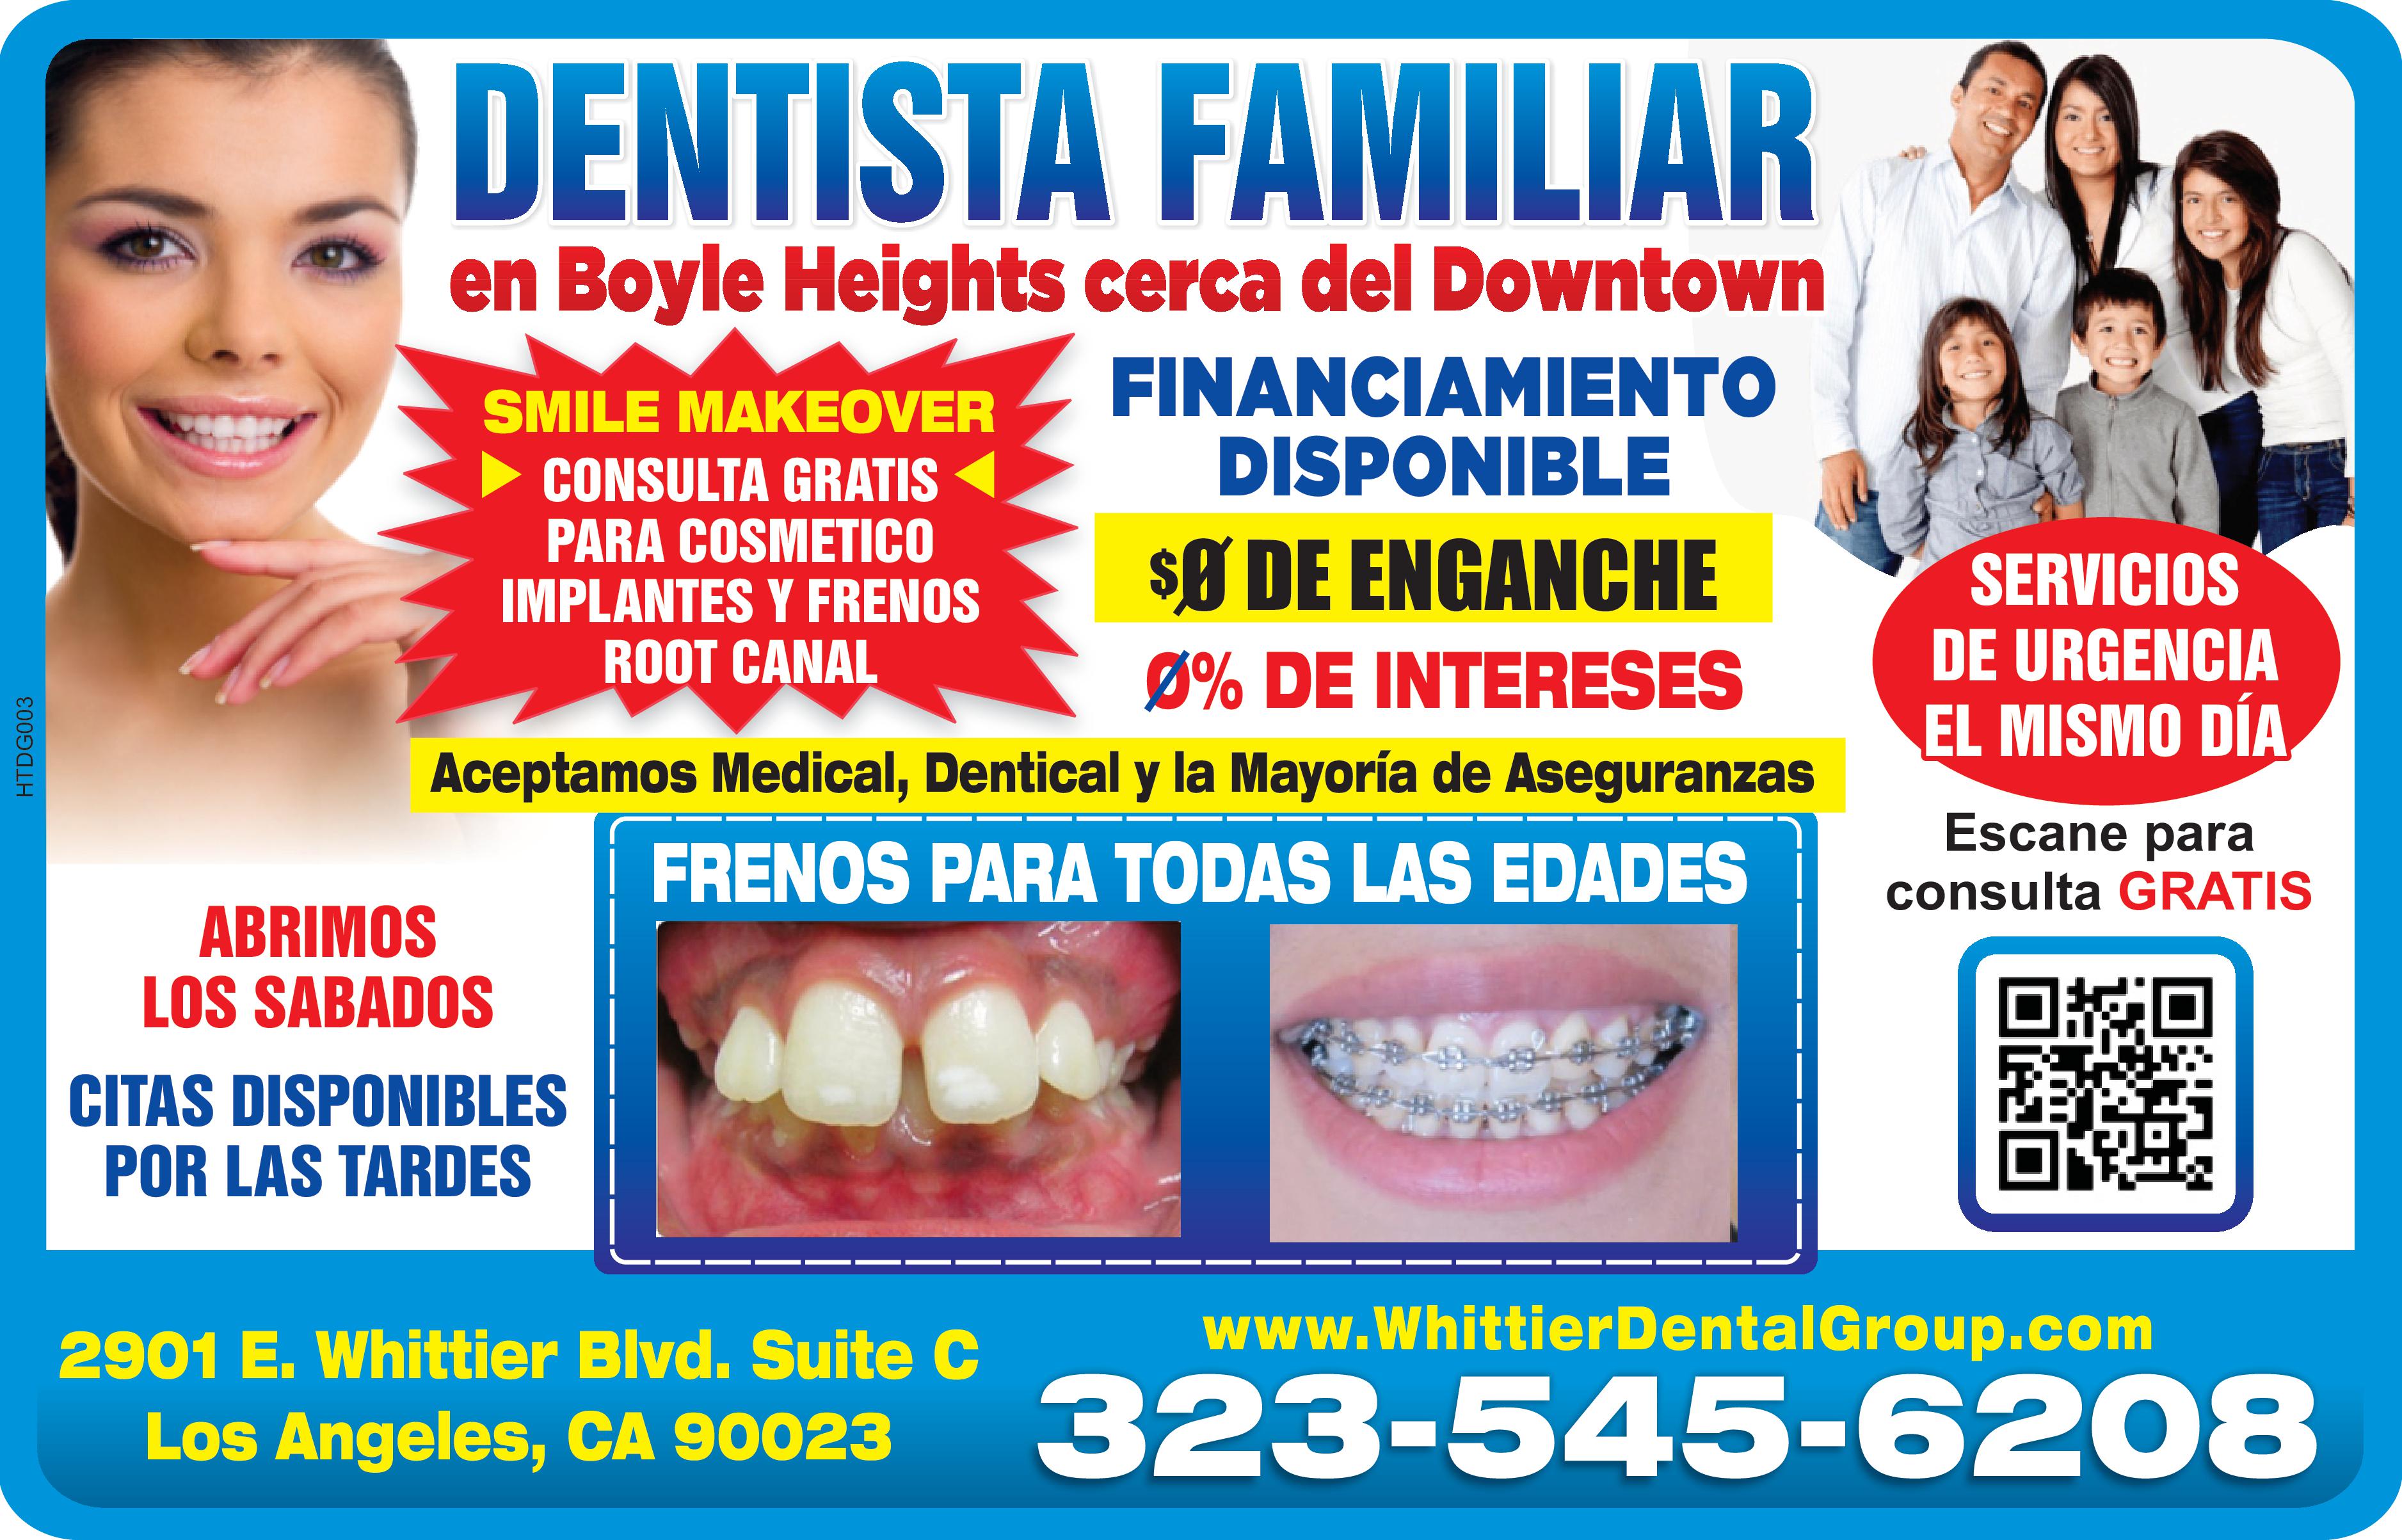 DENTISTA FAMILIAR 
en Boyle Heights cerca del Downtown
SMILE MAKEOVER CONSULTA GRATIS PARA COSMETICO IMPLANTES Y FRENOS ROOT CANAL FINANCIAMIENTO DISPONIBLE 0 DE ENGANCHE 0%DE INTERESES Aceptamos Medical, Dentical y la mayoria de Aseguranzas
FRENOS PARA TODAS LAS EDADES ABRIMOS LOS SABADOS CITAS DISPONIBLES POR LAS TARDES 
2901 E. Whittier Blvd. Suite C Los Angeles, CA 90023 323-545-6208